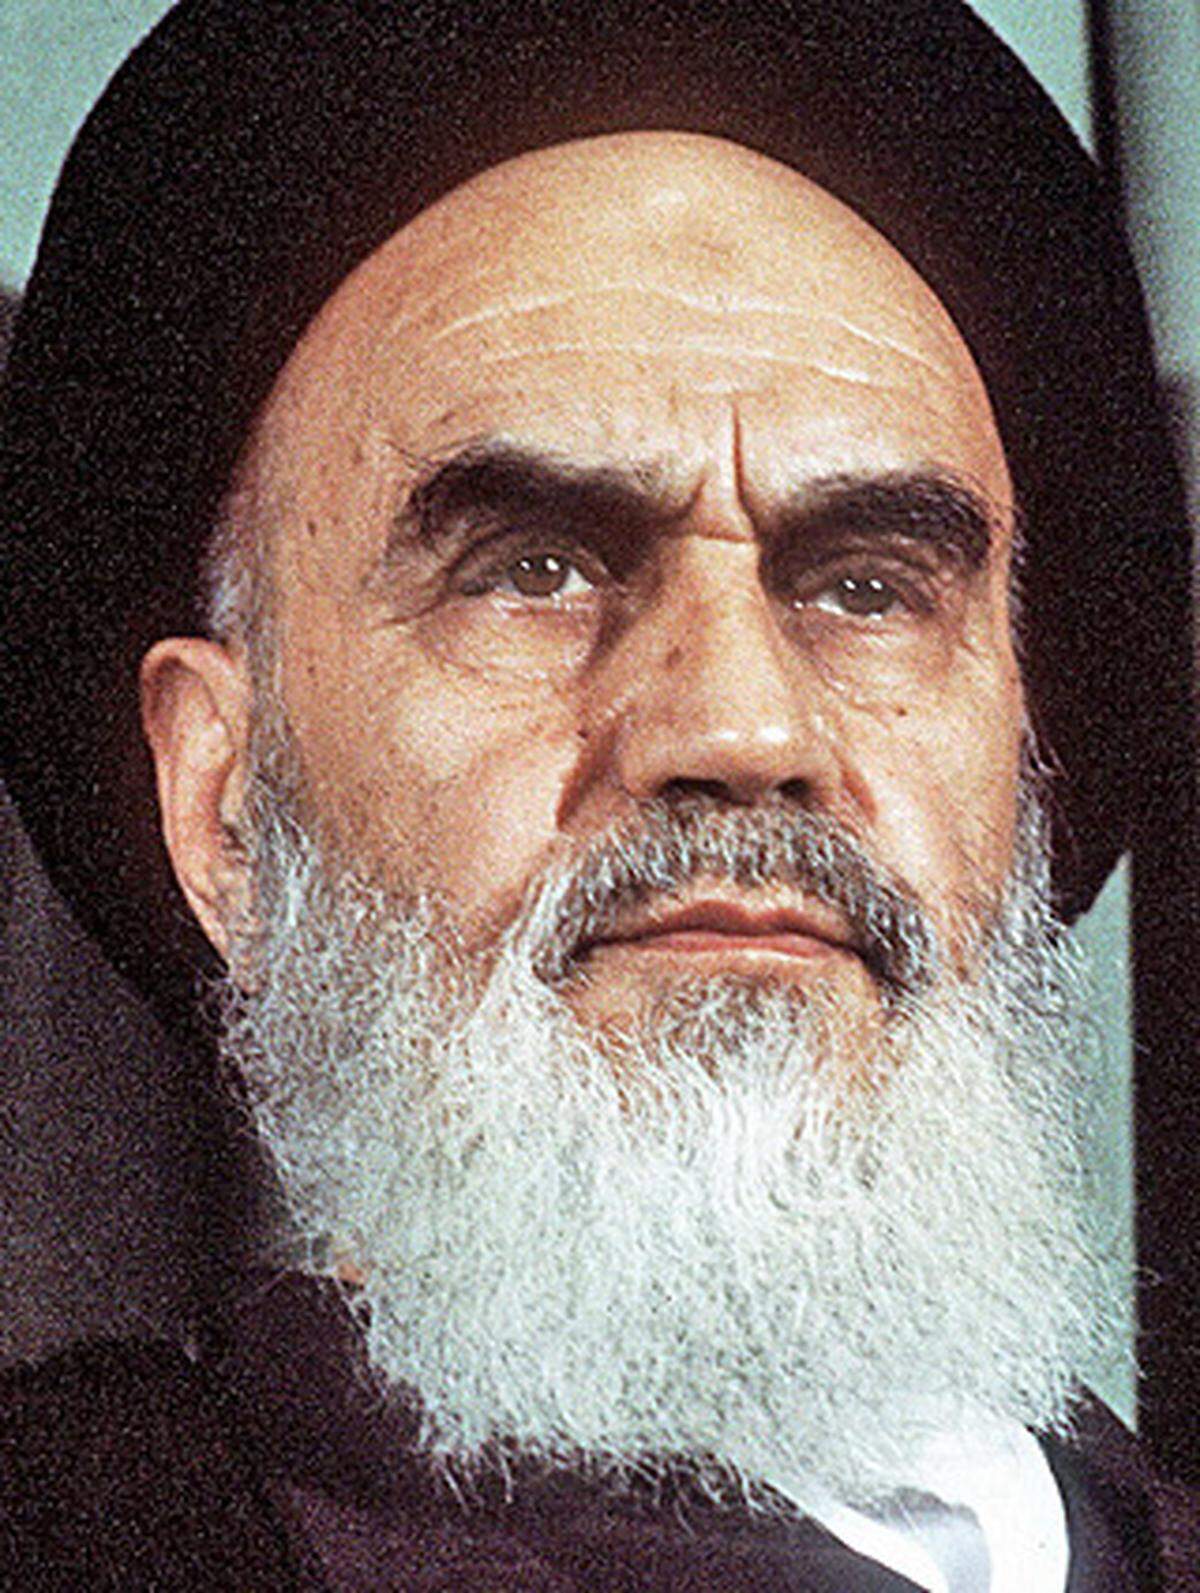 Ayatollah Khomeini schuf einen "Gottesstaat", in dem Staat und Religion untrennbar miteinander verbunden sind. Bei einer Volksabstimmung im März 1979 waren über 90 Prozent der Bevölkerung für die Islamische Republik Iran. Fundamentalistisch-islamische Kräfte kamen an die Macht und übten diese gewaltsam aus. Khomeini selbst kürte sich zum Führer mit umfassender Vollmacht. Er starb hochbetagt 1989 an Krebs. Sein Mausoleum im Süden von Teheran ist Pilgerstätte für tausende Anhänger. Ali Khamenei übernahm die Nachfolge als geistlicher Führer des Iran.